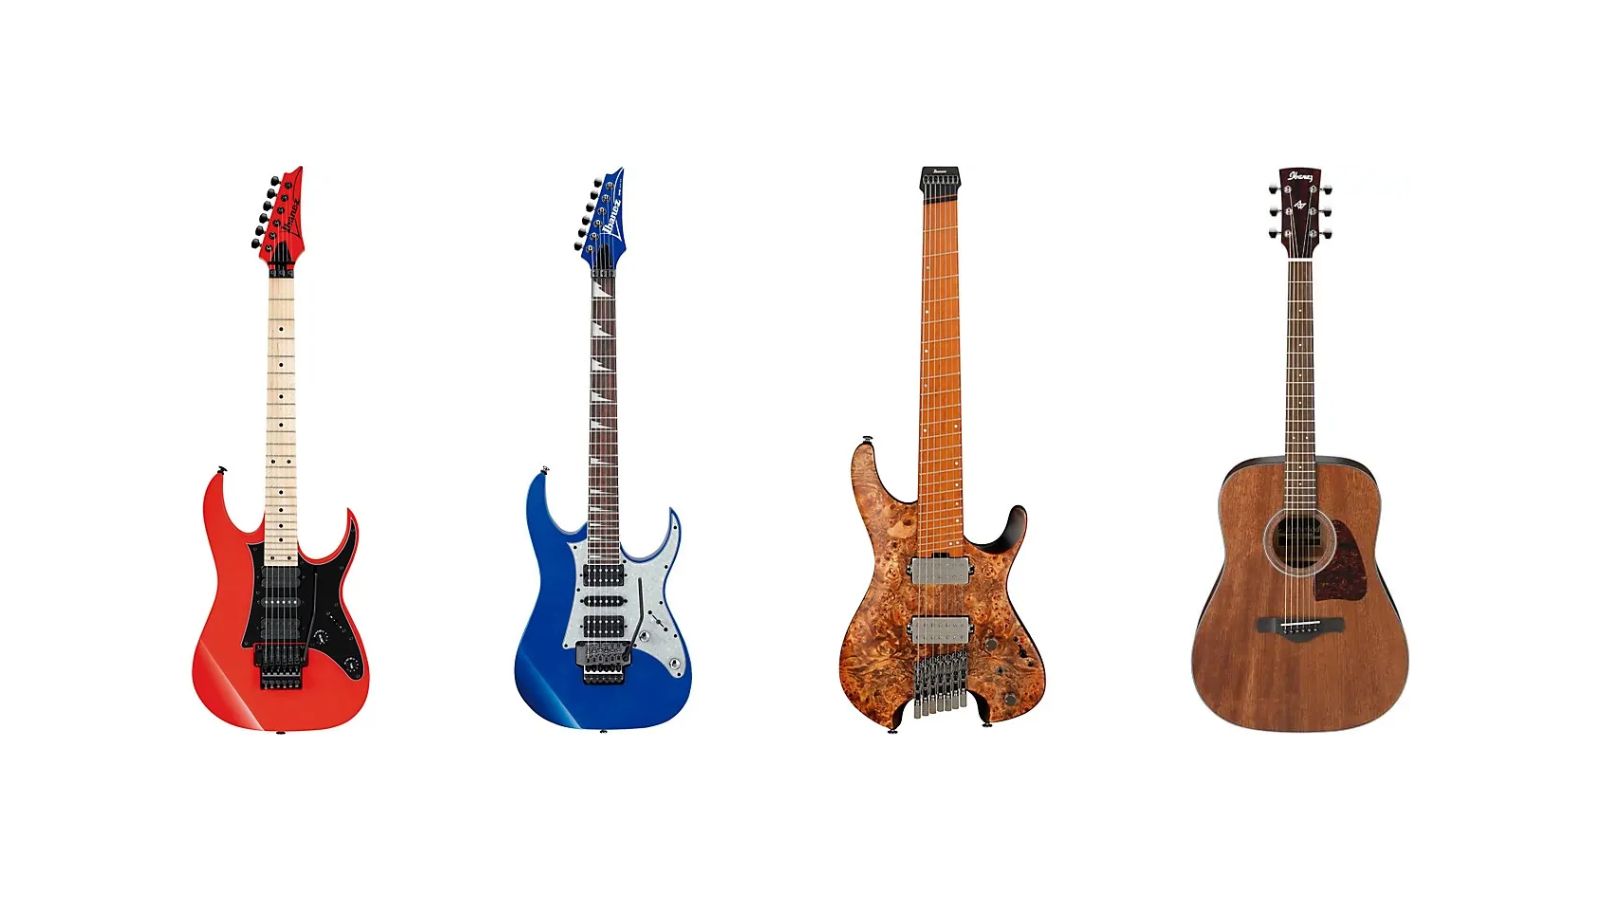 Ibanez guitars